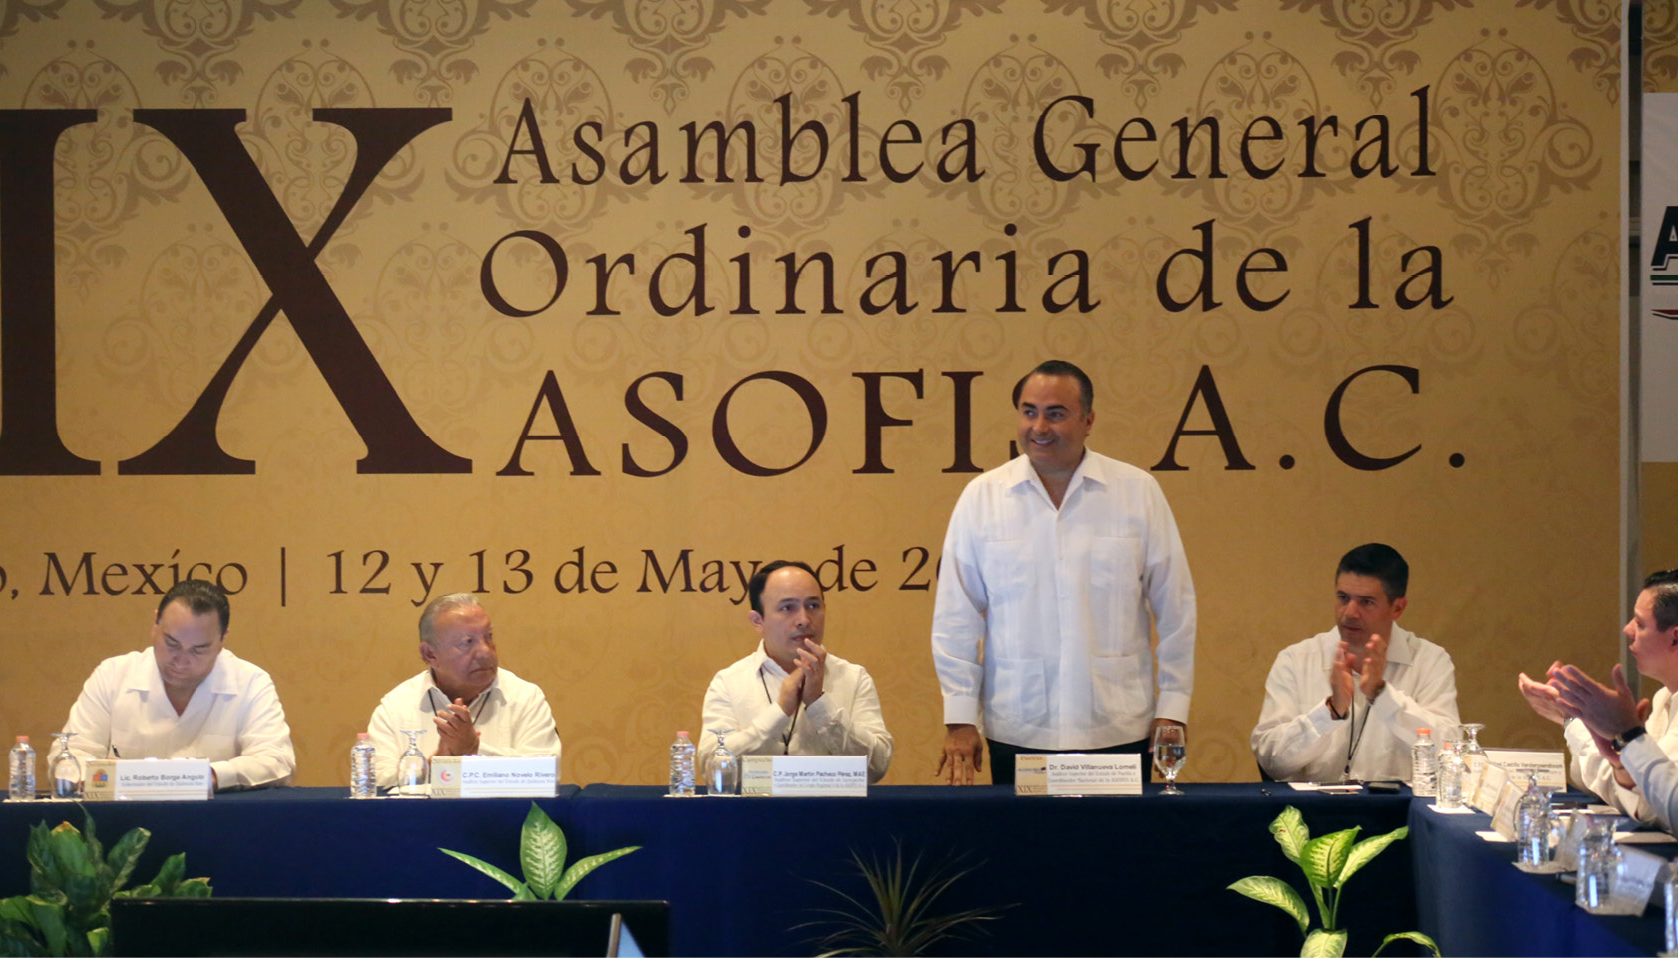 XIX Asamblea General Ordinaria de la ASOFIS